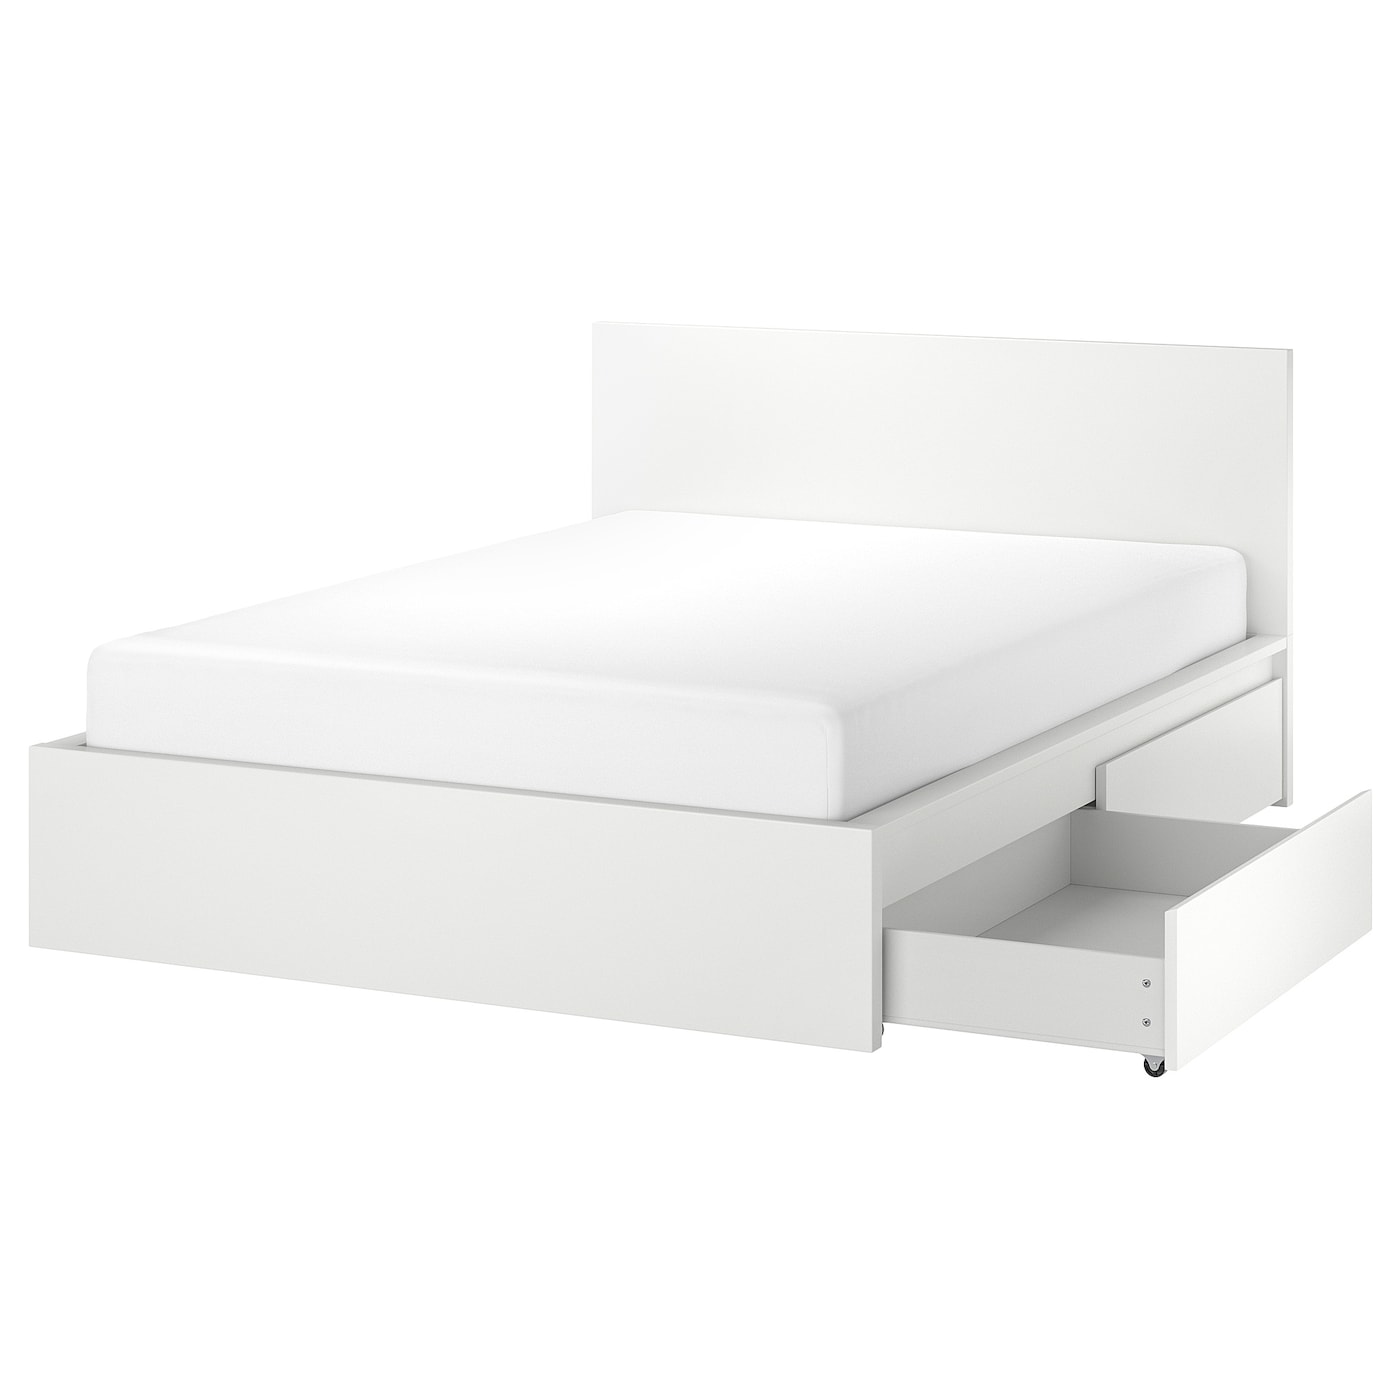 Каркас кровати с 2 ящиками для хранения - IKEA MALM, 200х160 см, белый, МАЛЬМ ИКЕА